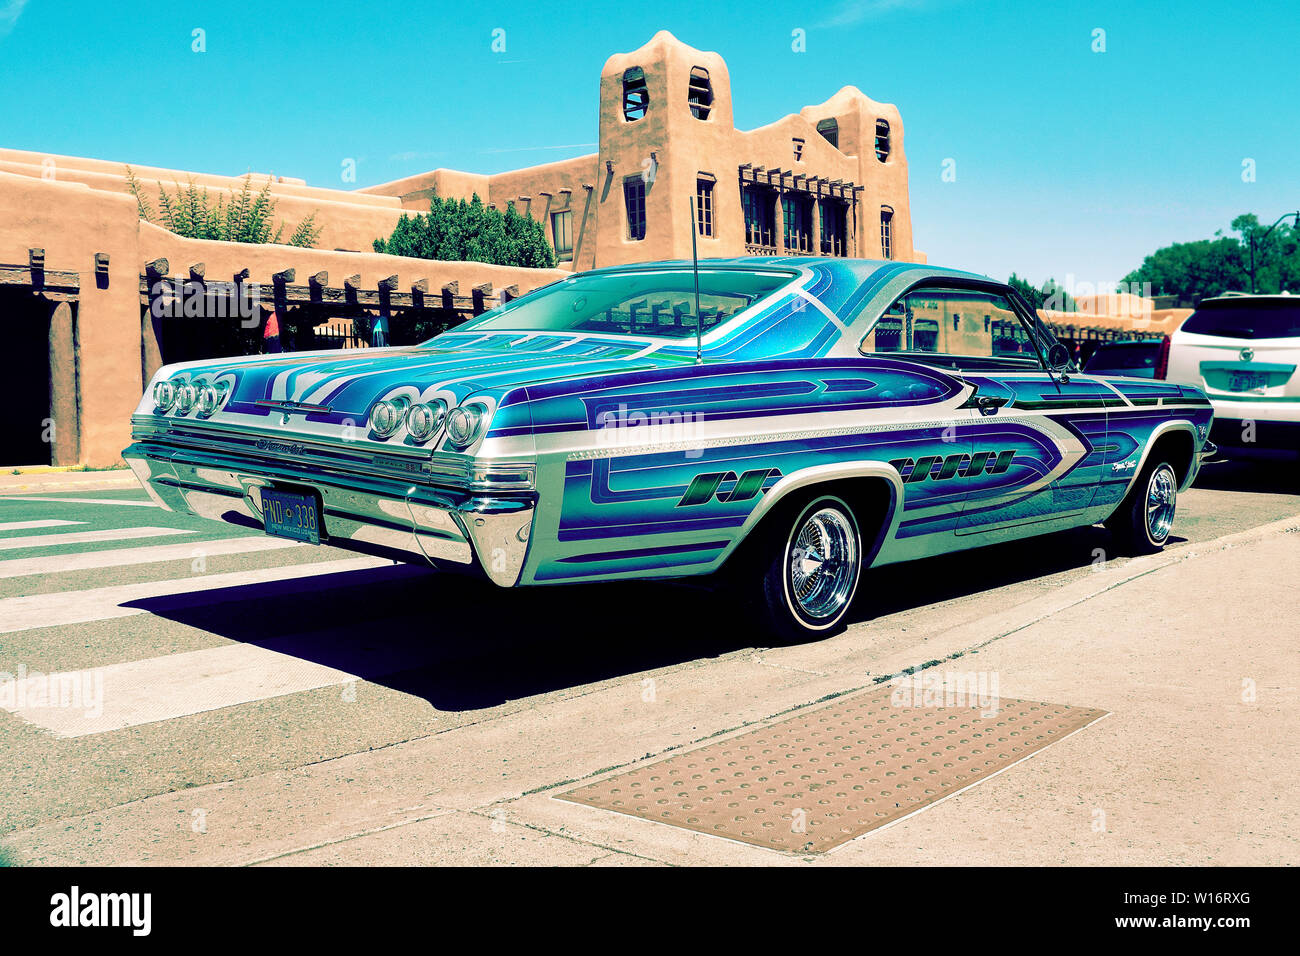 1965 Chevrolet Impala Low Rider custom car in Santa Fe New Mexico USA Stock Photo